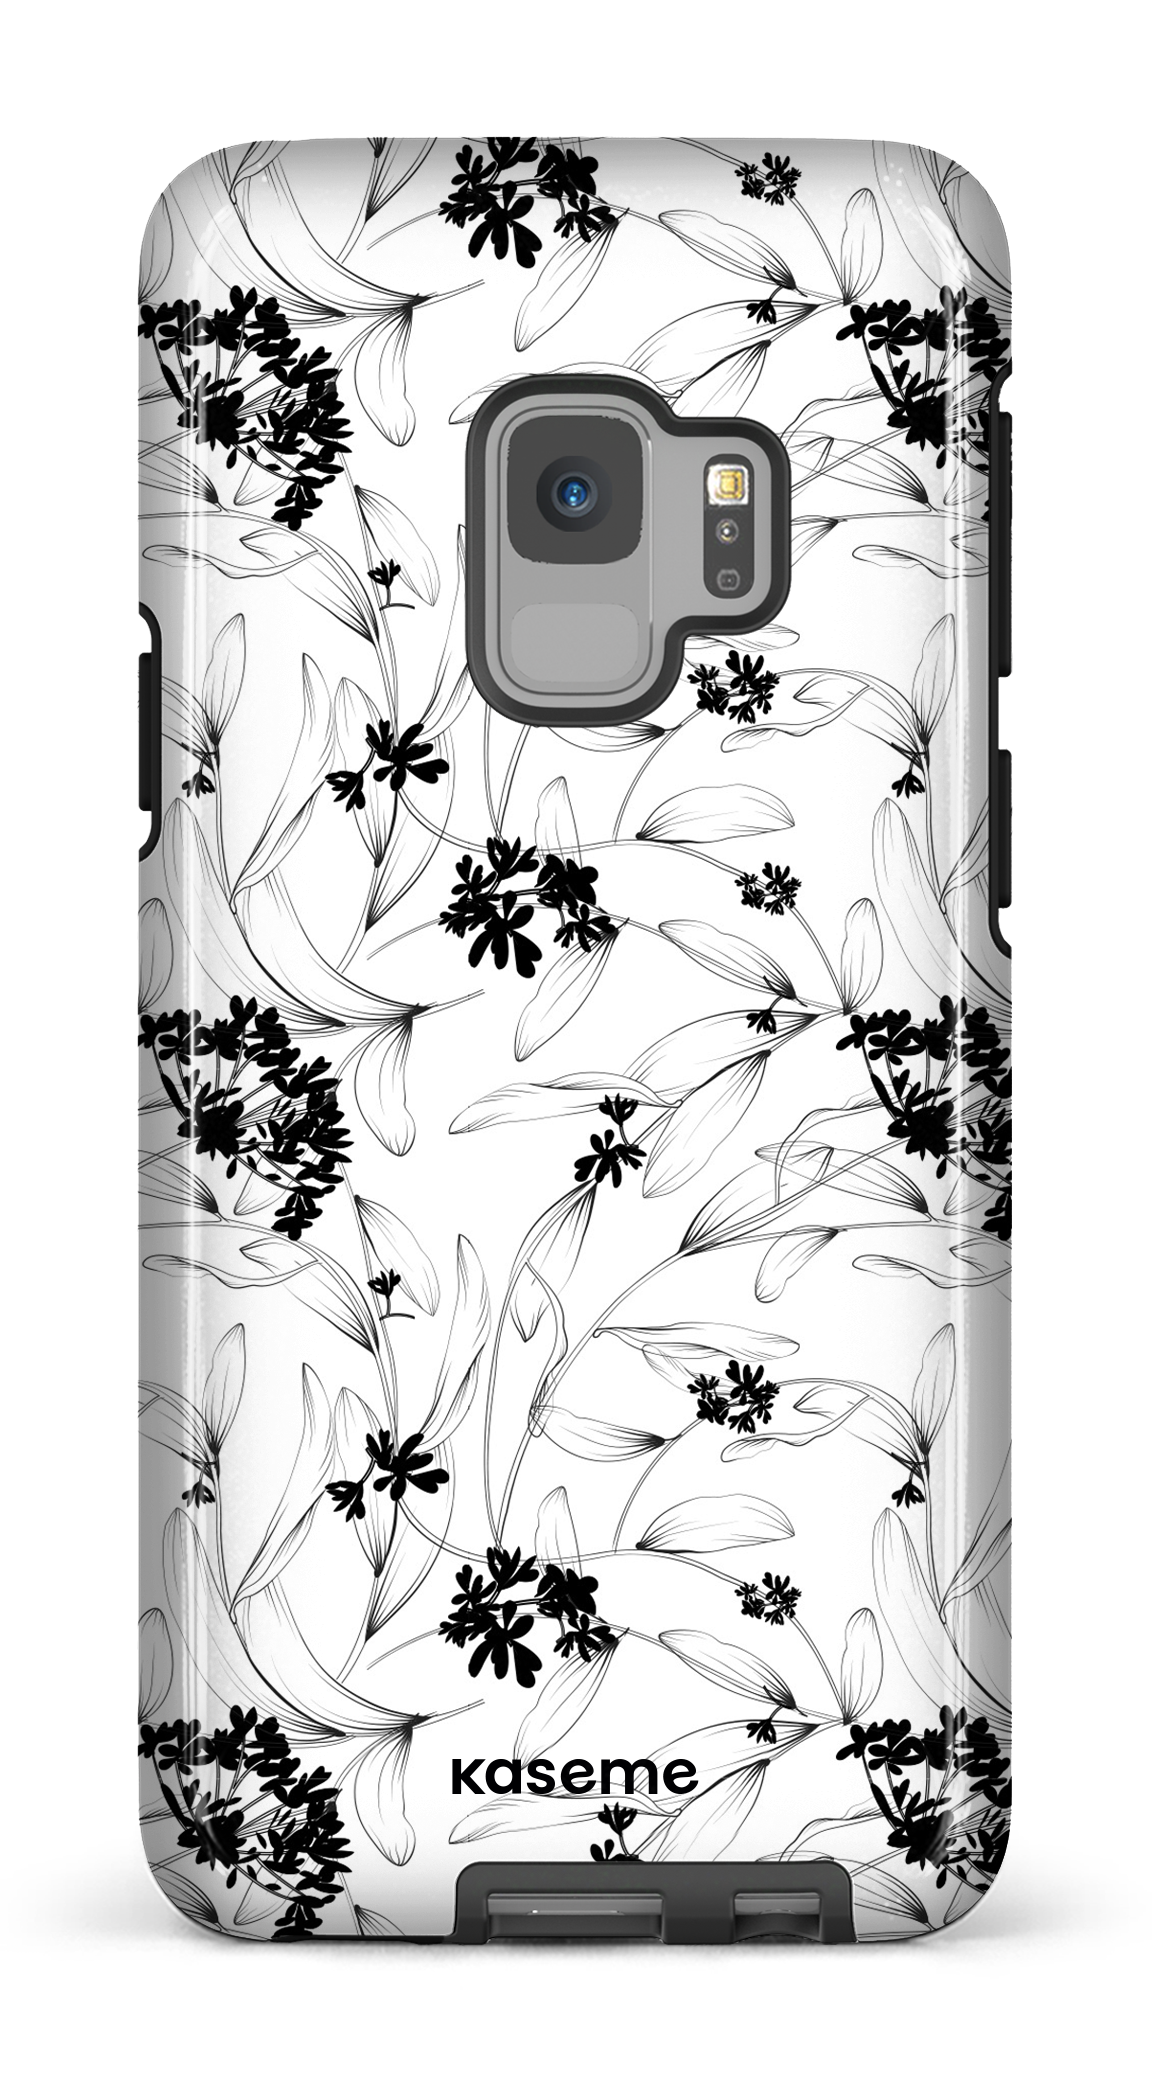 Cordelia - Galaxy S9